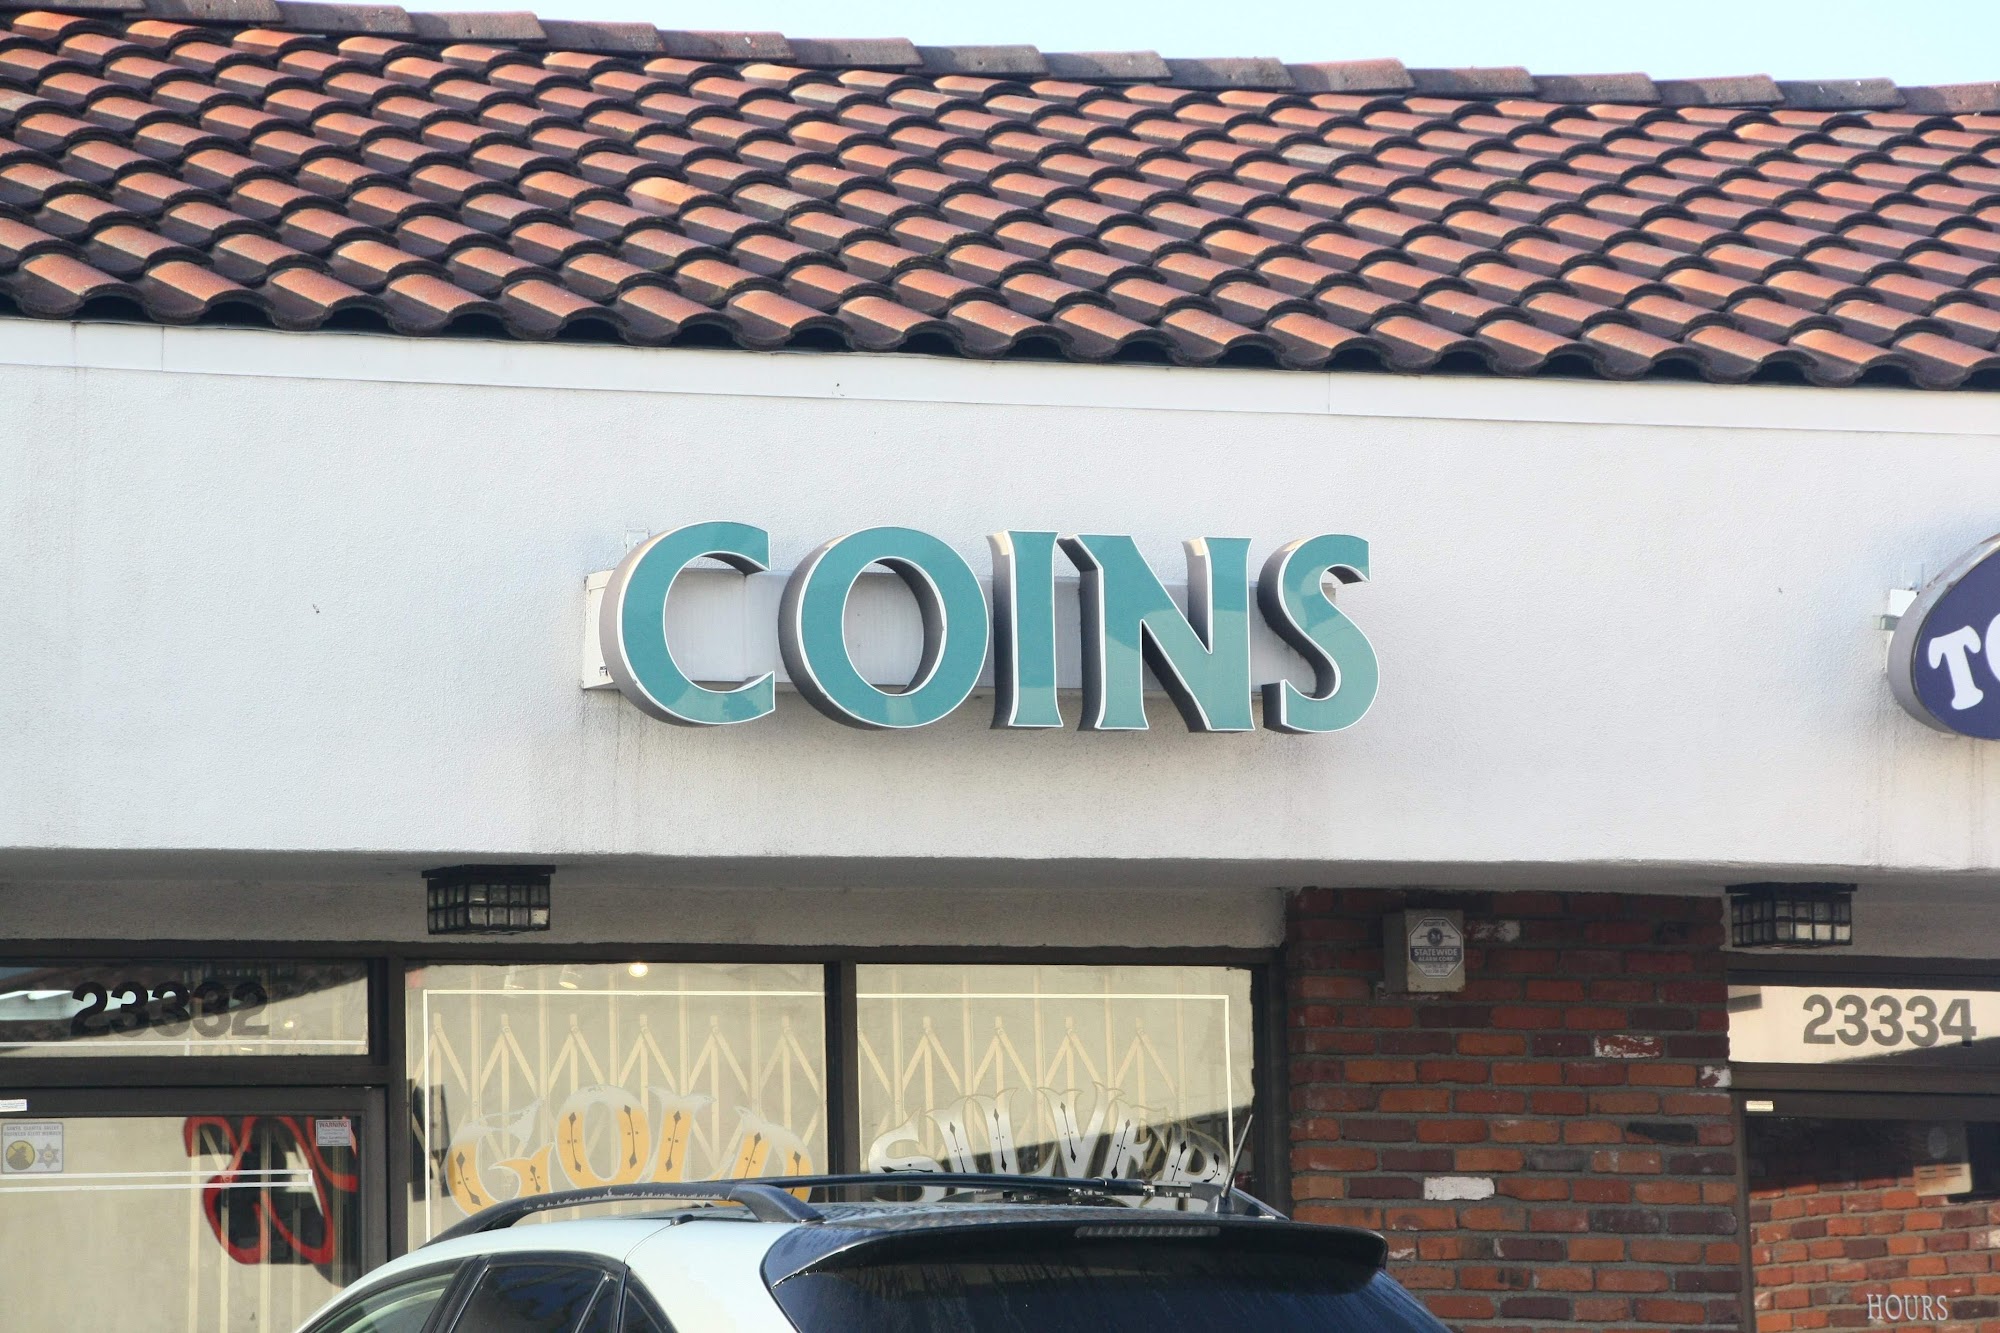 Coins Plus